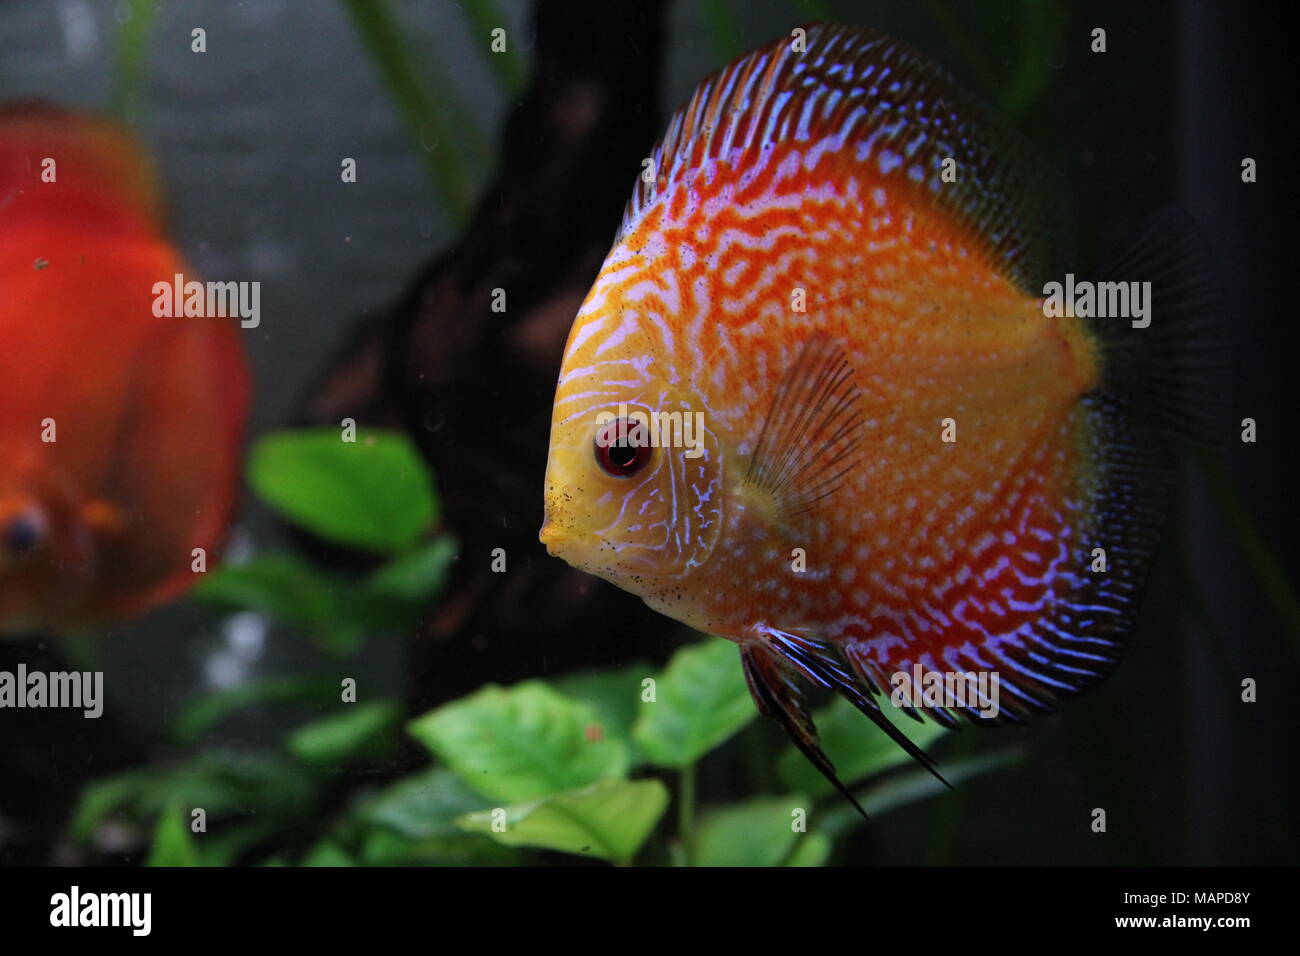 Orange Discus Fish in Tropical Freshwater aquarium Stock Photo